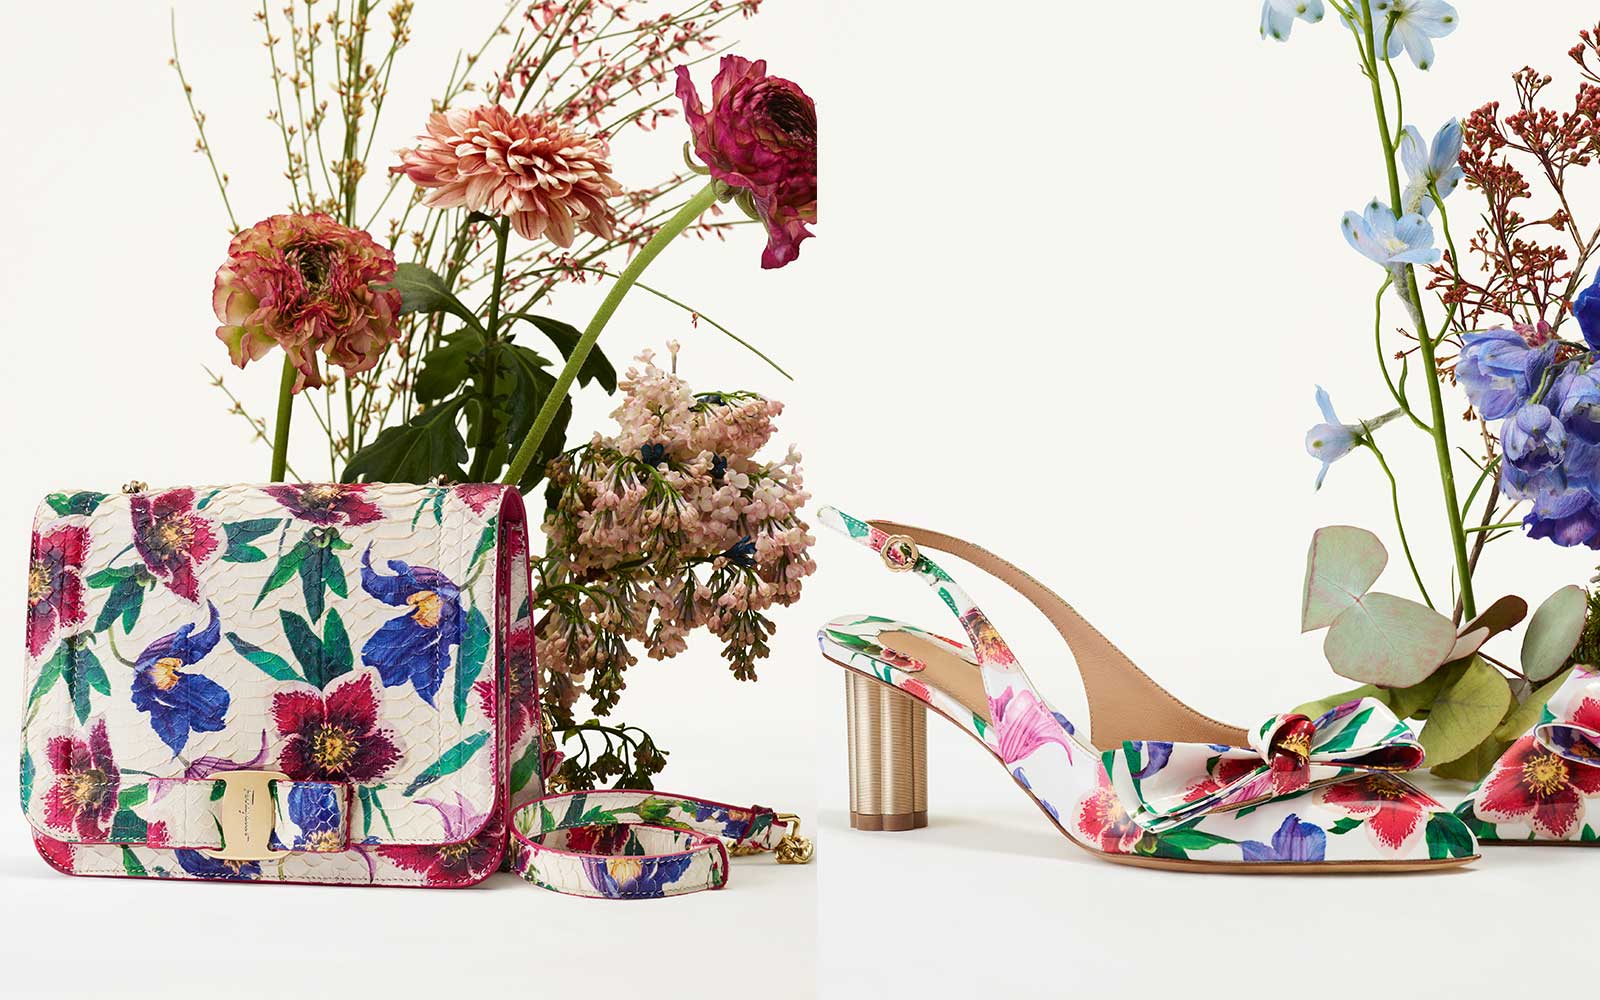 ferragamo floral shoes